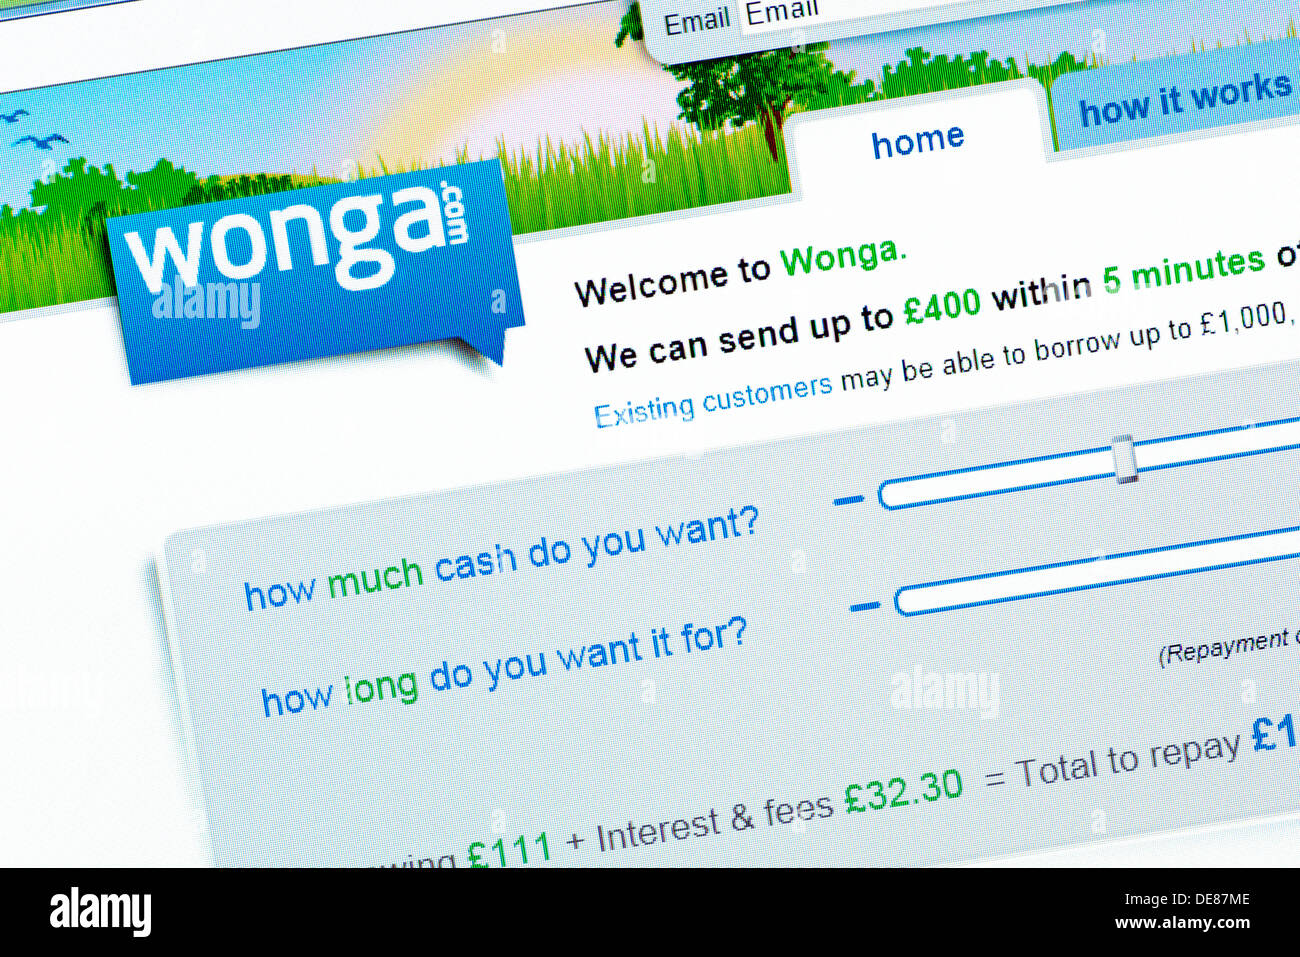 Wonga.com. Sito web della Payday Loan Company. Offerta Wonga.com a breve termine ad alta interessi a credito ai consumatori e alle imprese. Foto Stock